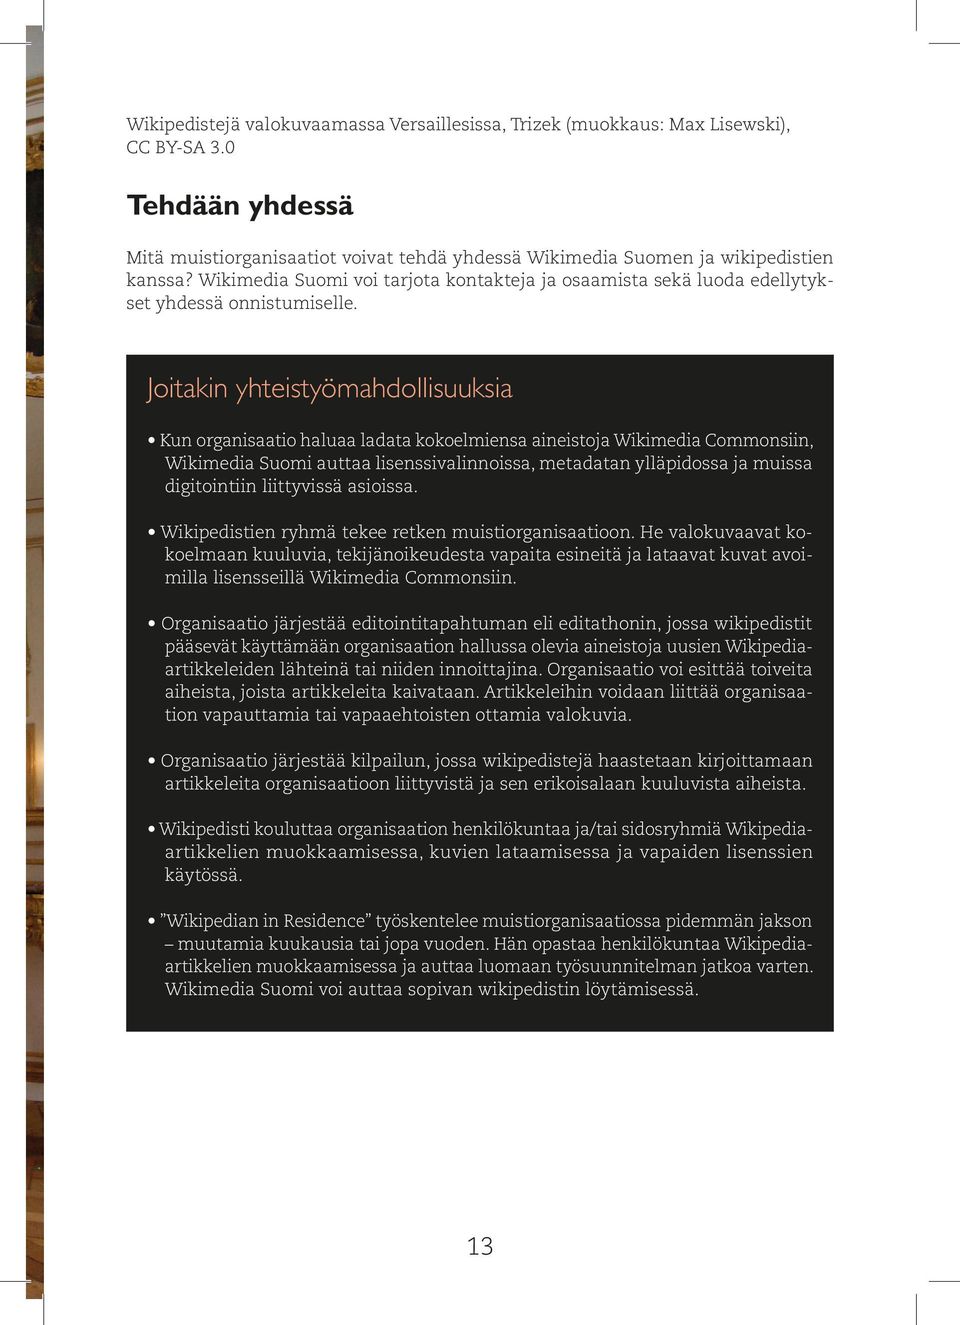 Joitakin yhteistyömahdollisuuksia Kun organisaatio haluaa ladata kokoelmiensa aineistoja Wikimedia Commonsiin, Wikimedia Suomi auttaa lisenssivalinnoissa, metadatan ylläpidossa ja muissa digitointiin